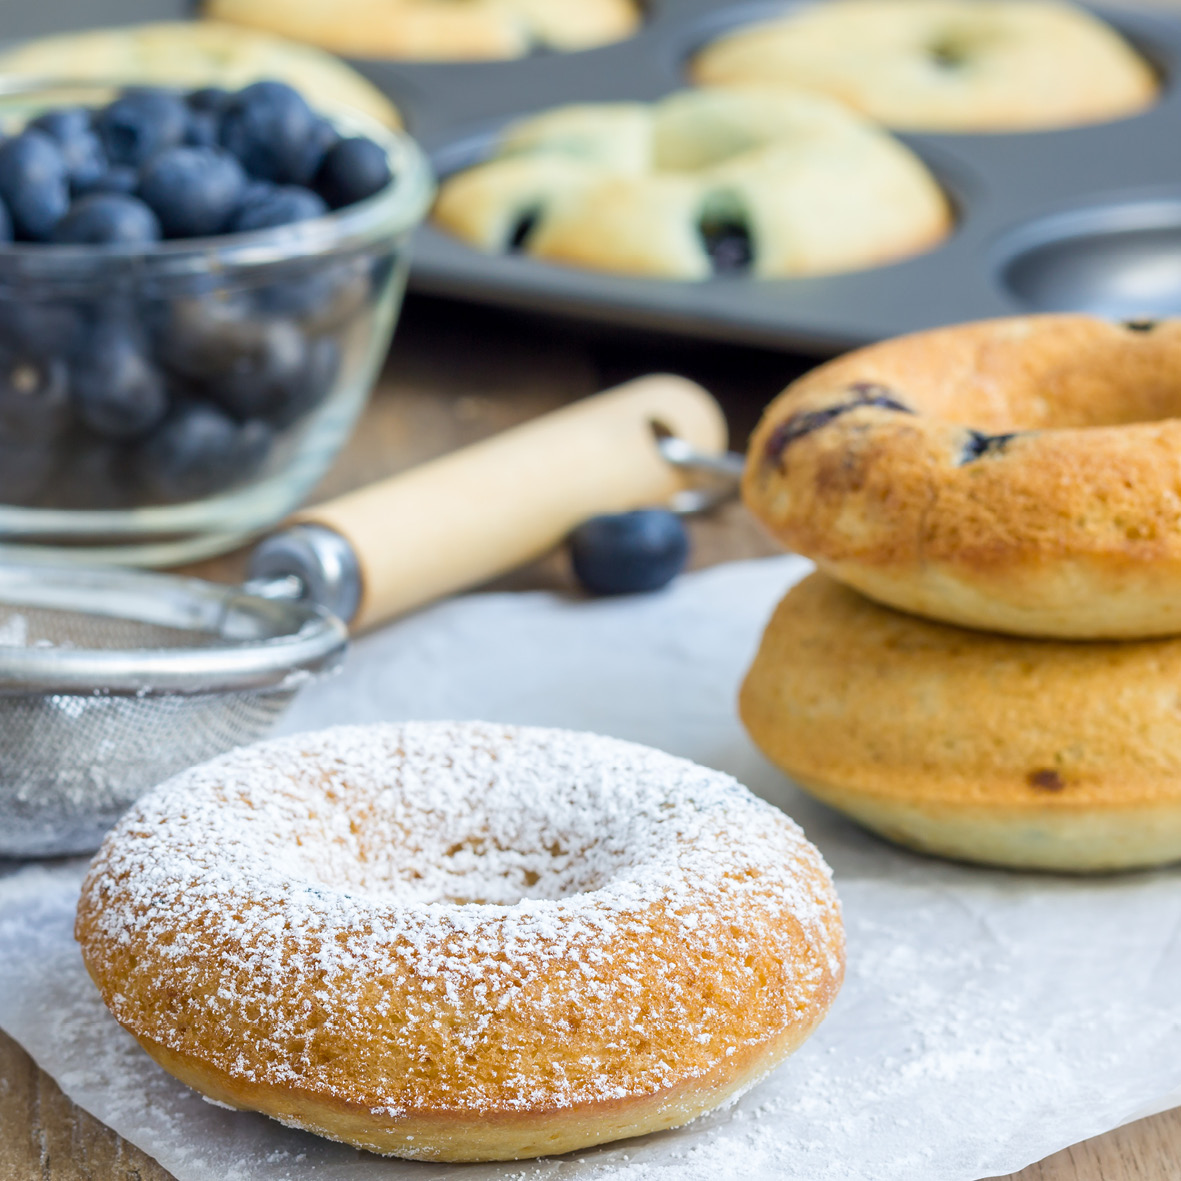 baked blueberry doughnuts.jpg